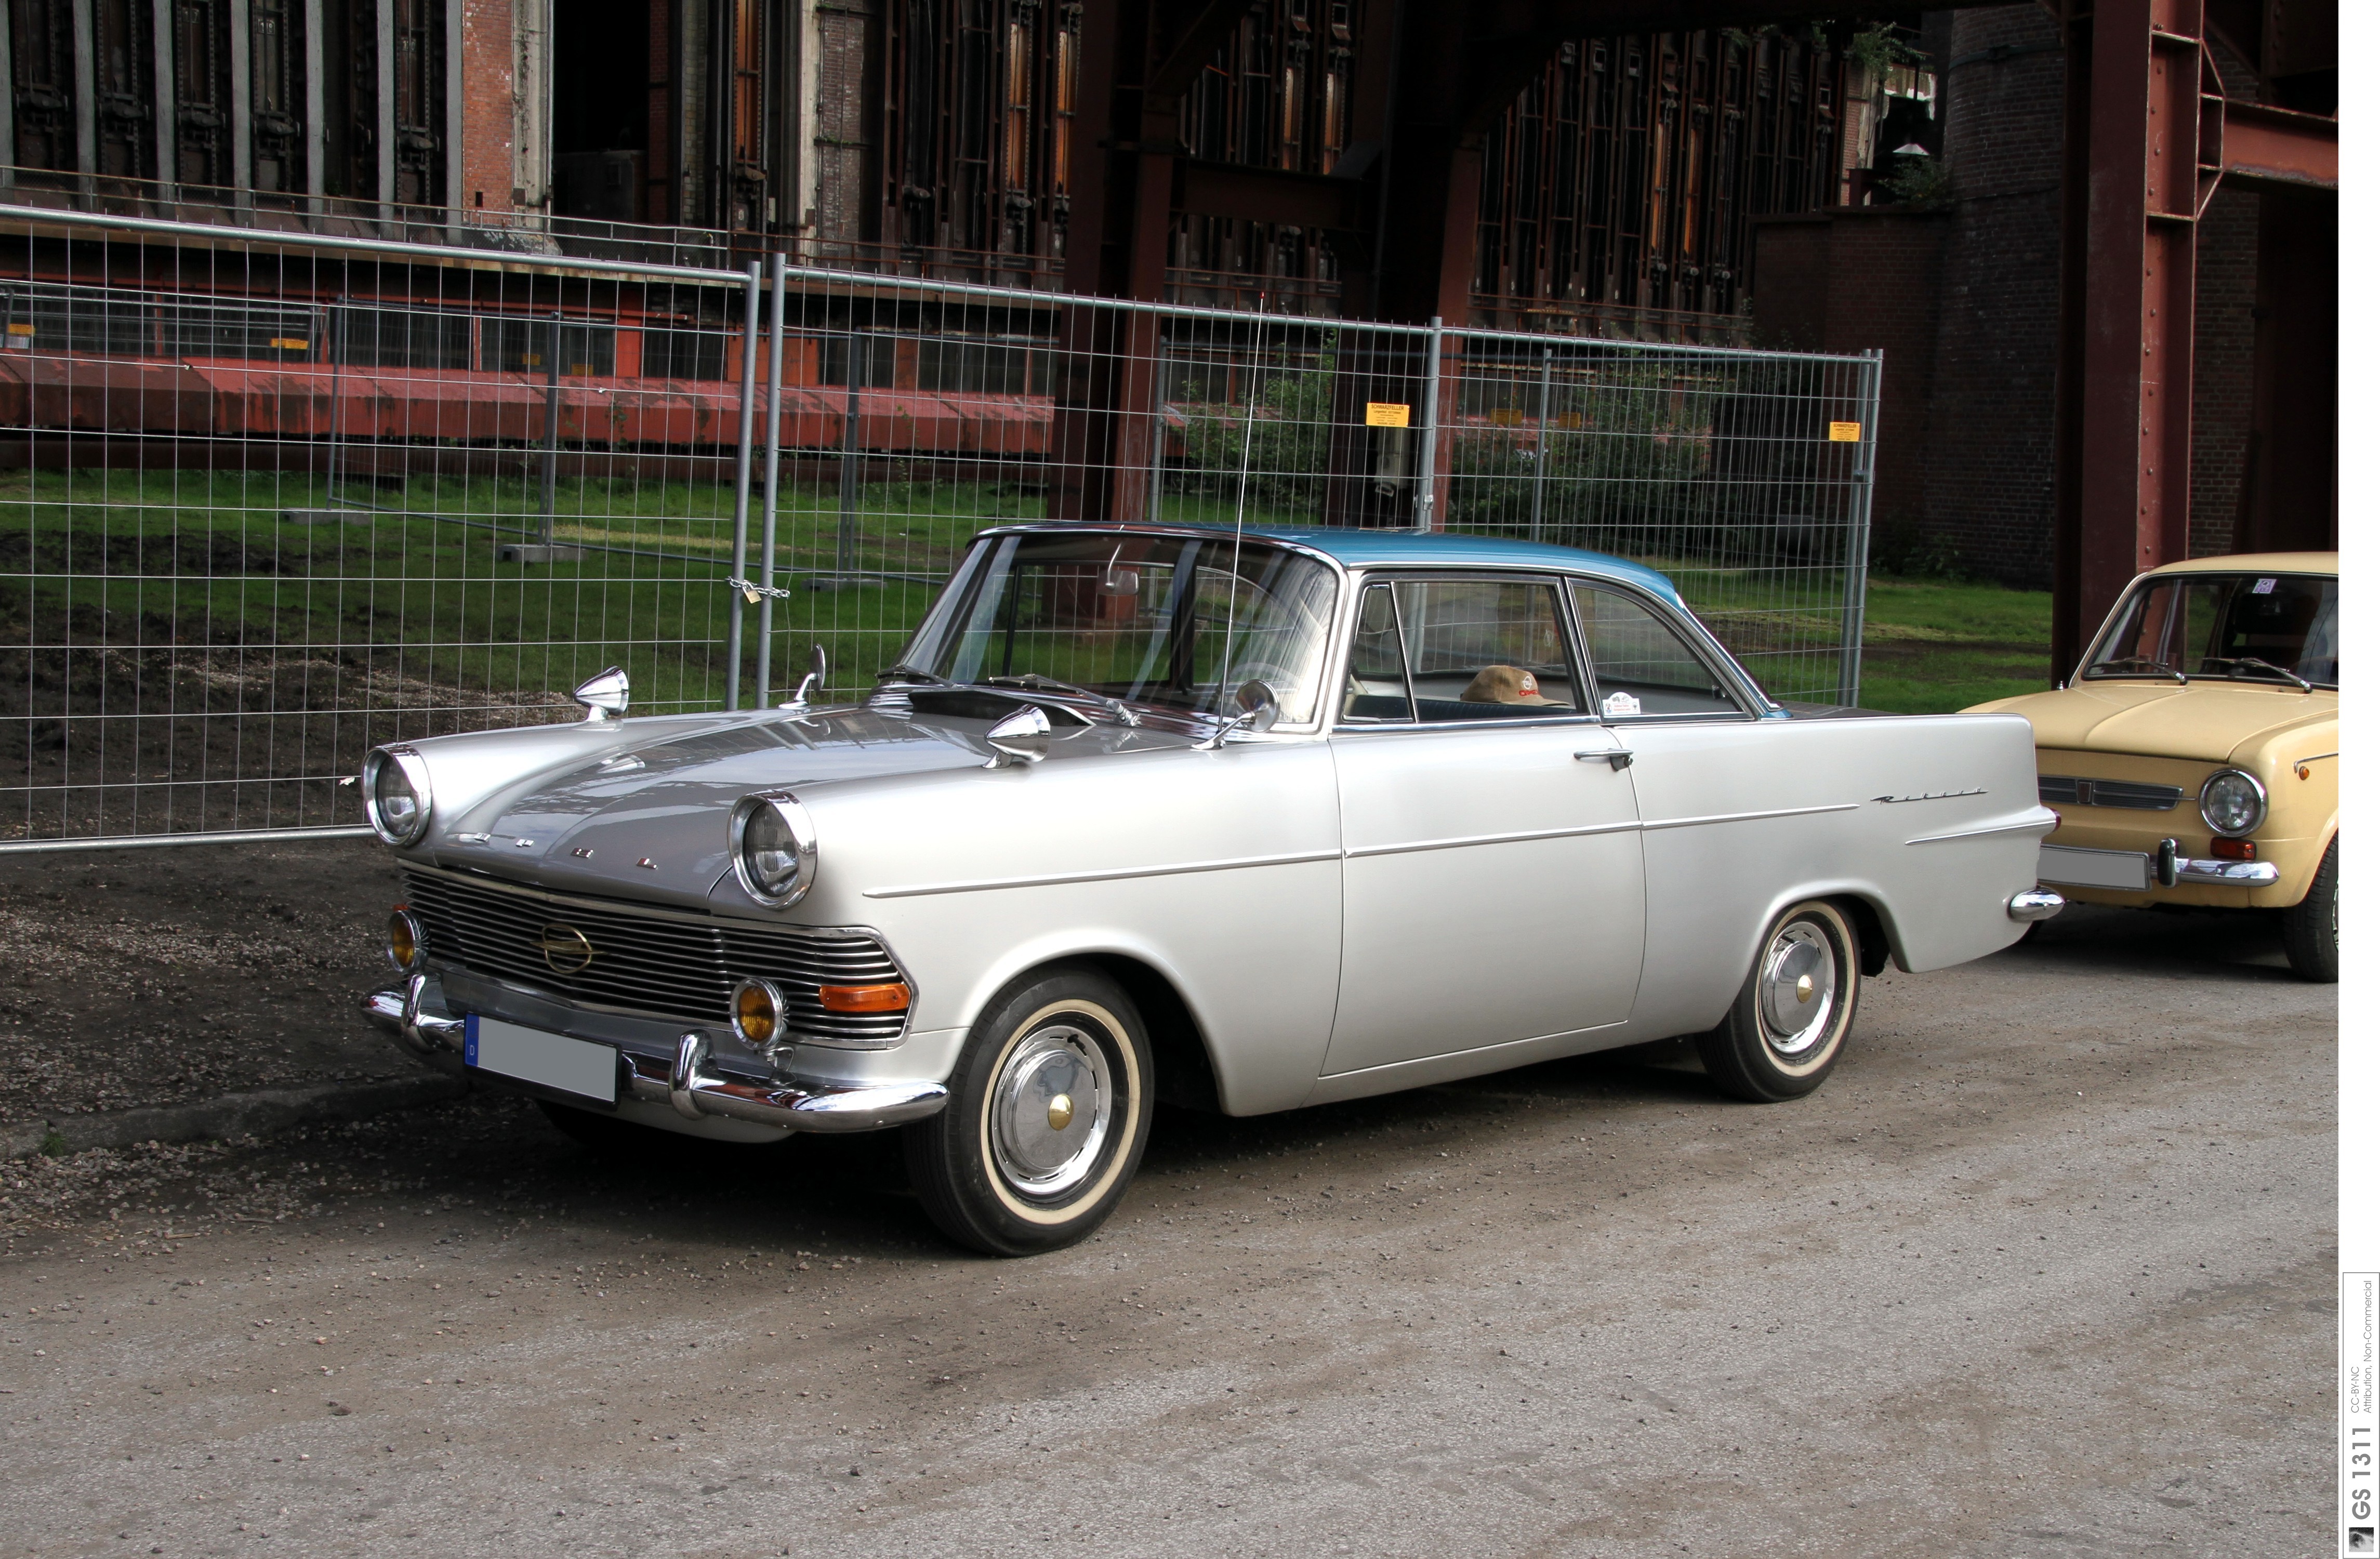 Opel Rekord P2 coupÃ© 1960 (04) / Flickr - Partage de photos!